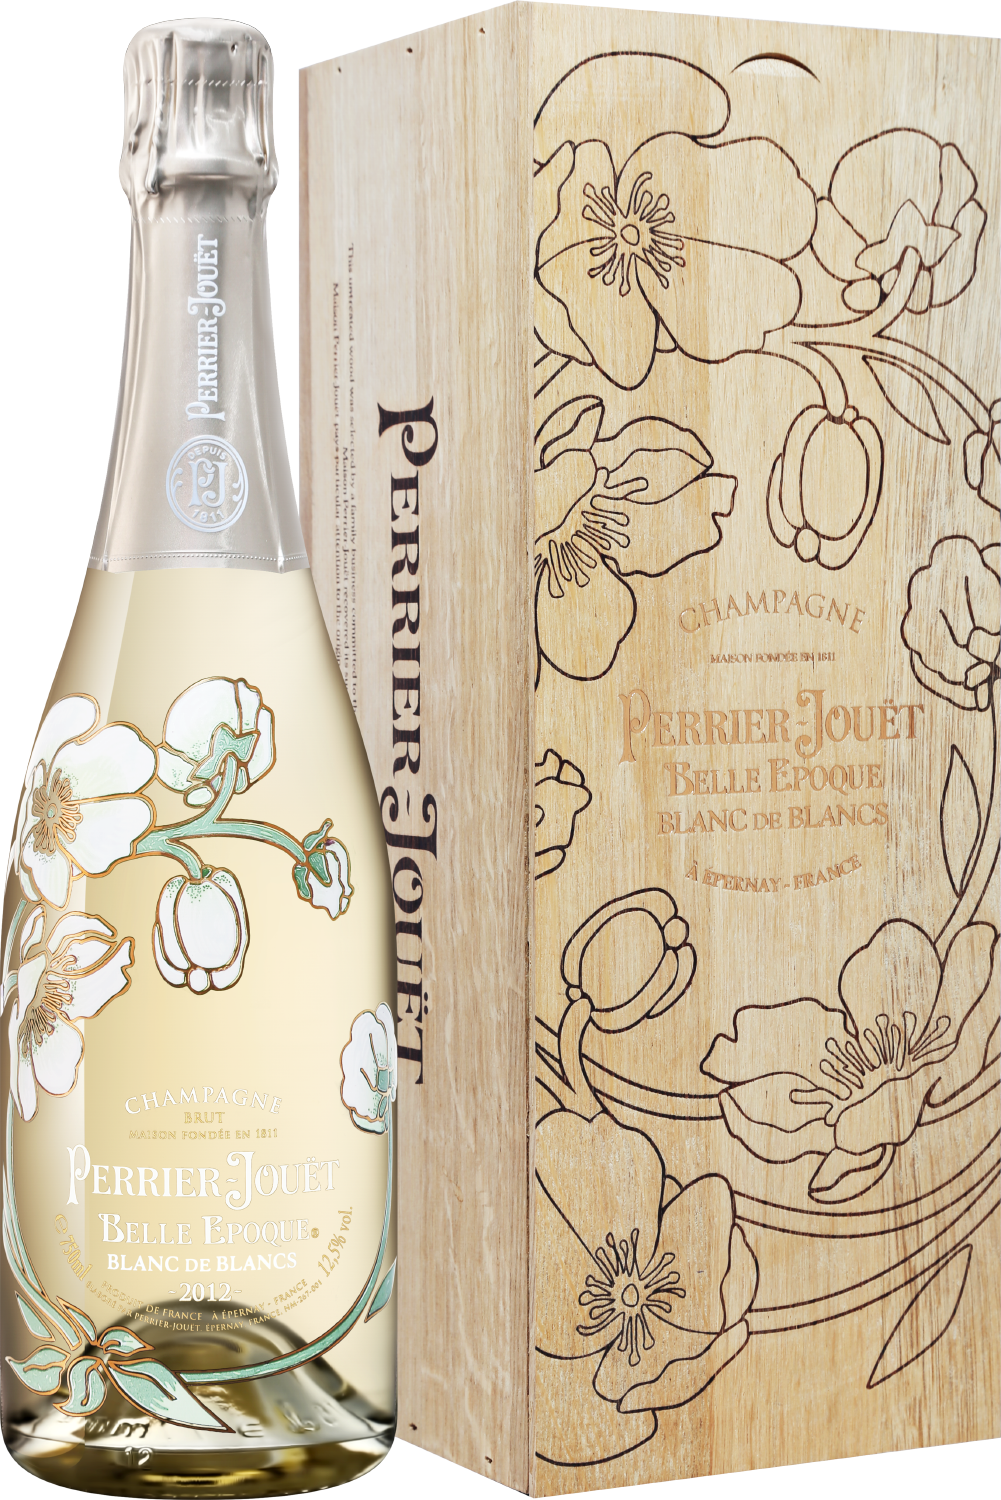 Perrier-Jouet Belle Epoque Blanc de Blancs 2012 Champagne AOC Brut (gift box) ruinart blanc de blanc champagne aoc gift box